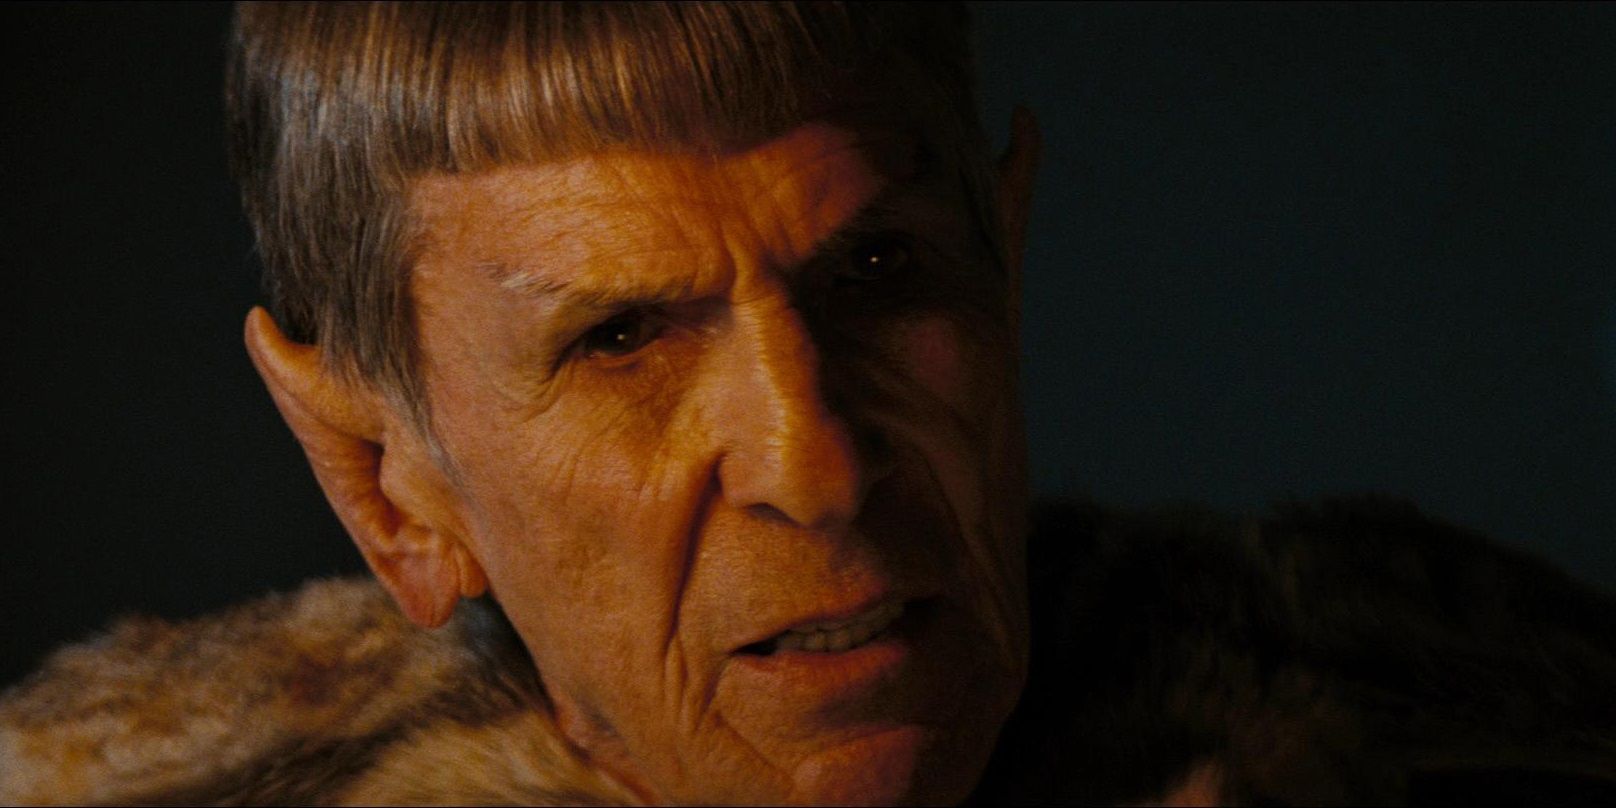 Star Trek (2009) Leonard Nimoy as Prime Ambassador Spock on Delta Vega.